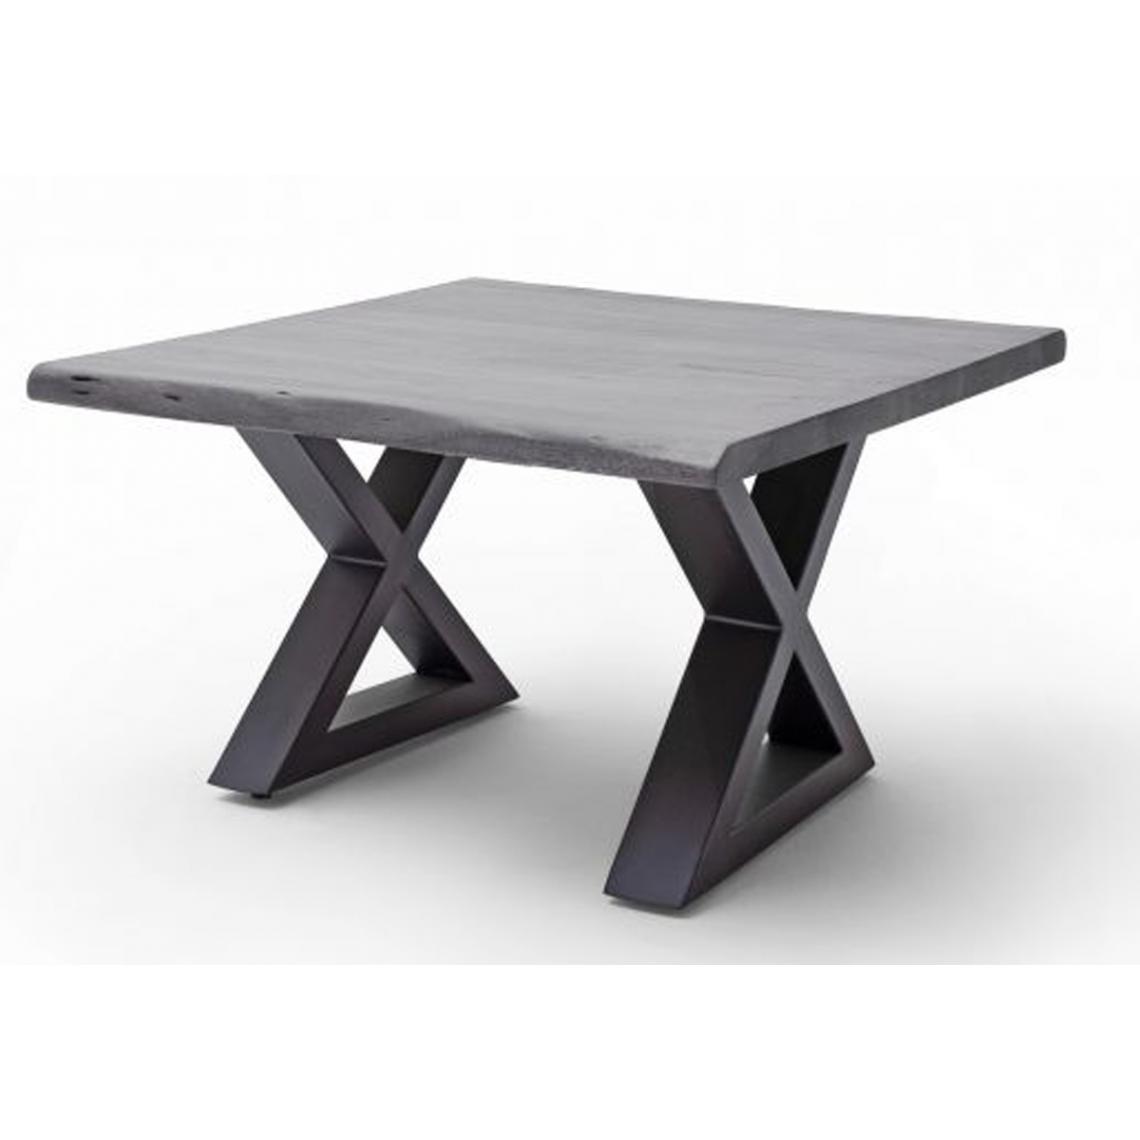 Pegane - Table basse en bois d'acacia massif gris / acier anthracite - L.75 x H.45 x P.75 cm - Tables basses